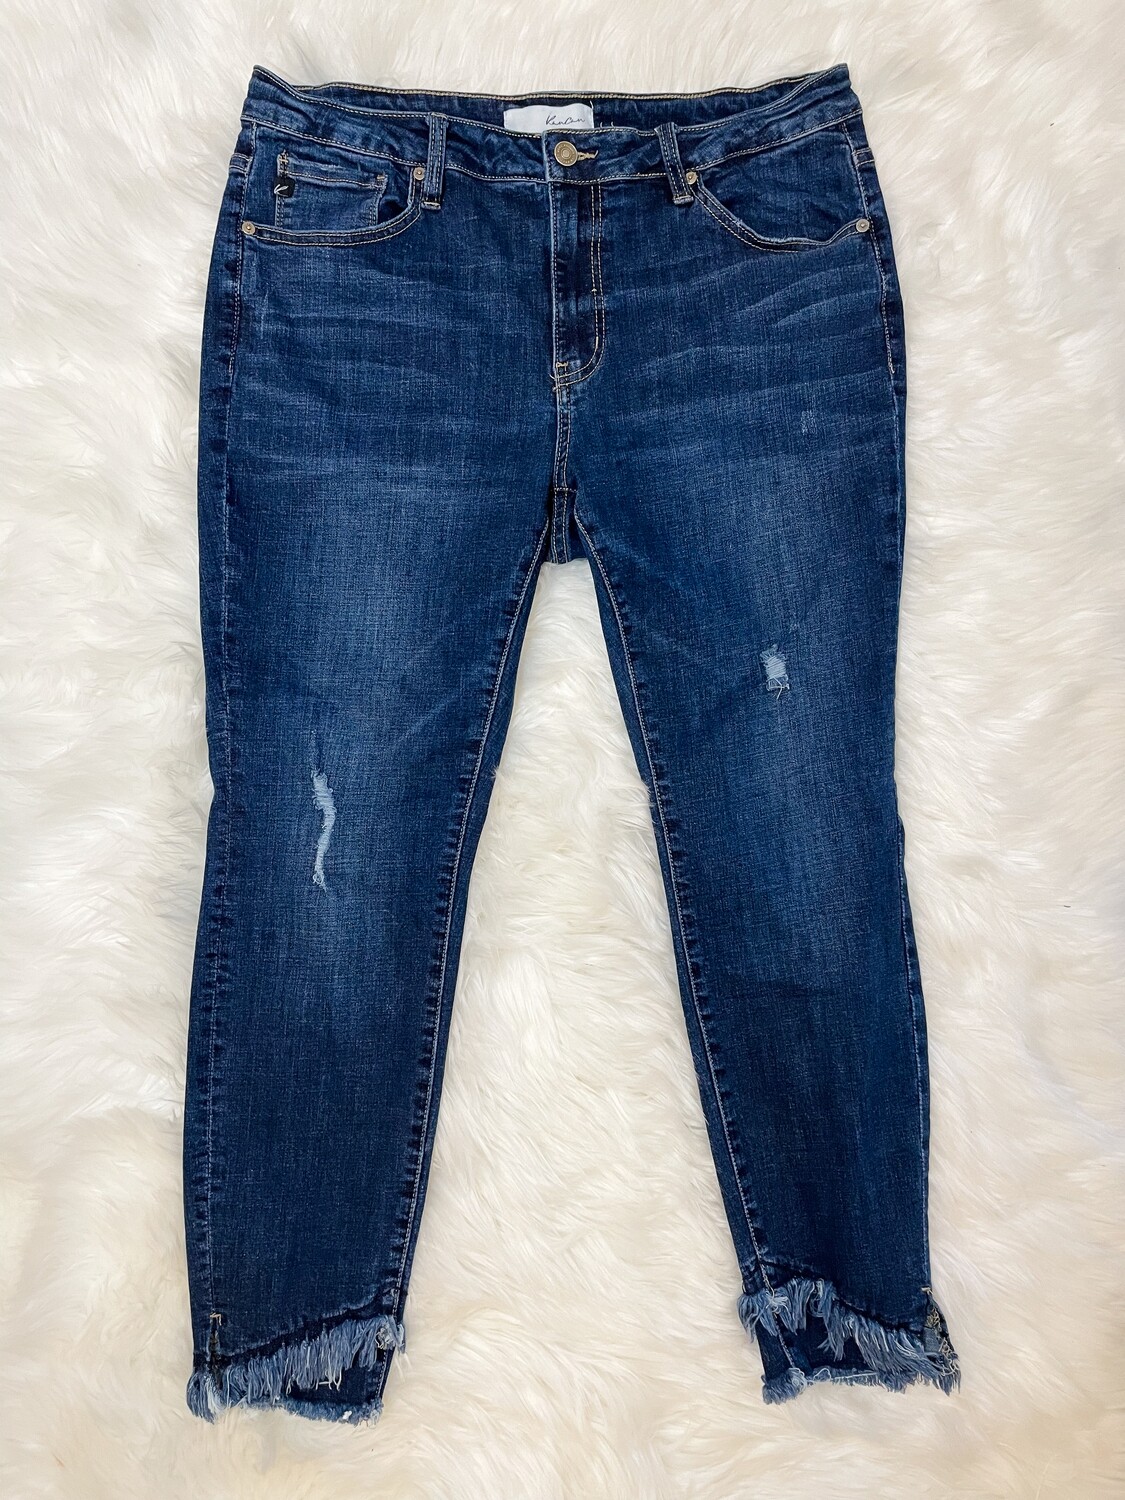 KanCan Dark Wash Frayed Hem Skinny Ankle Jeans - XL